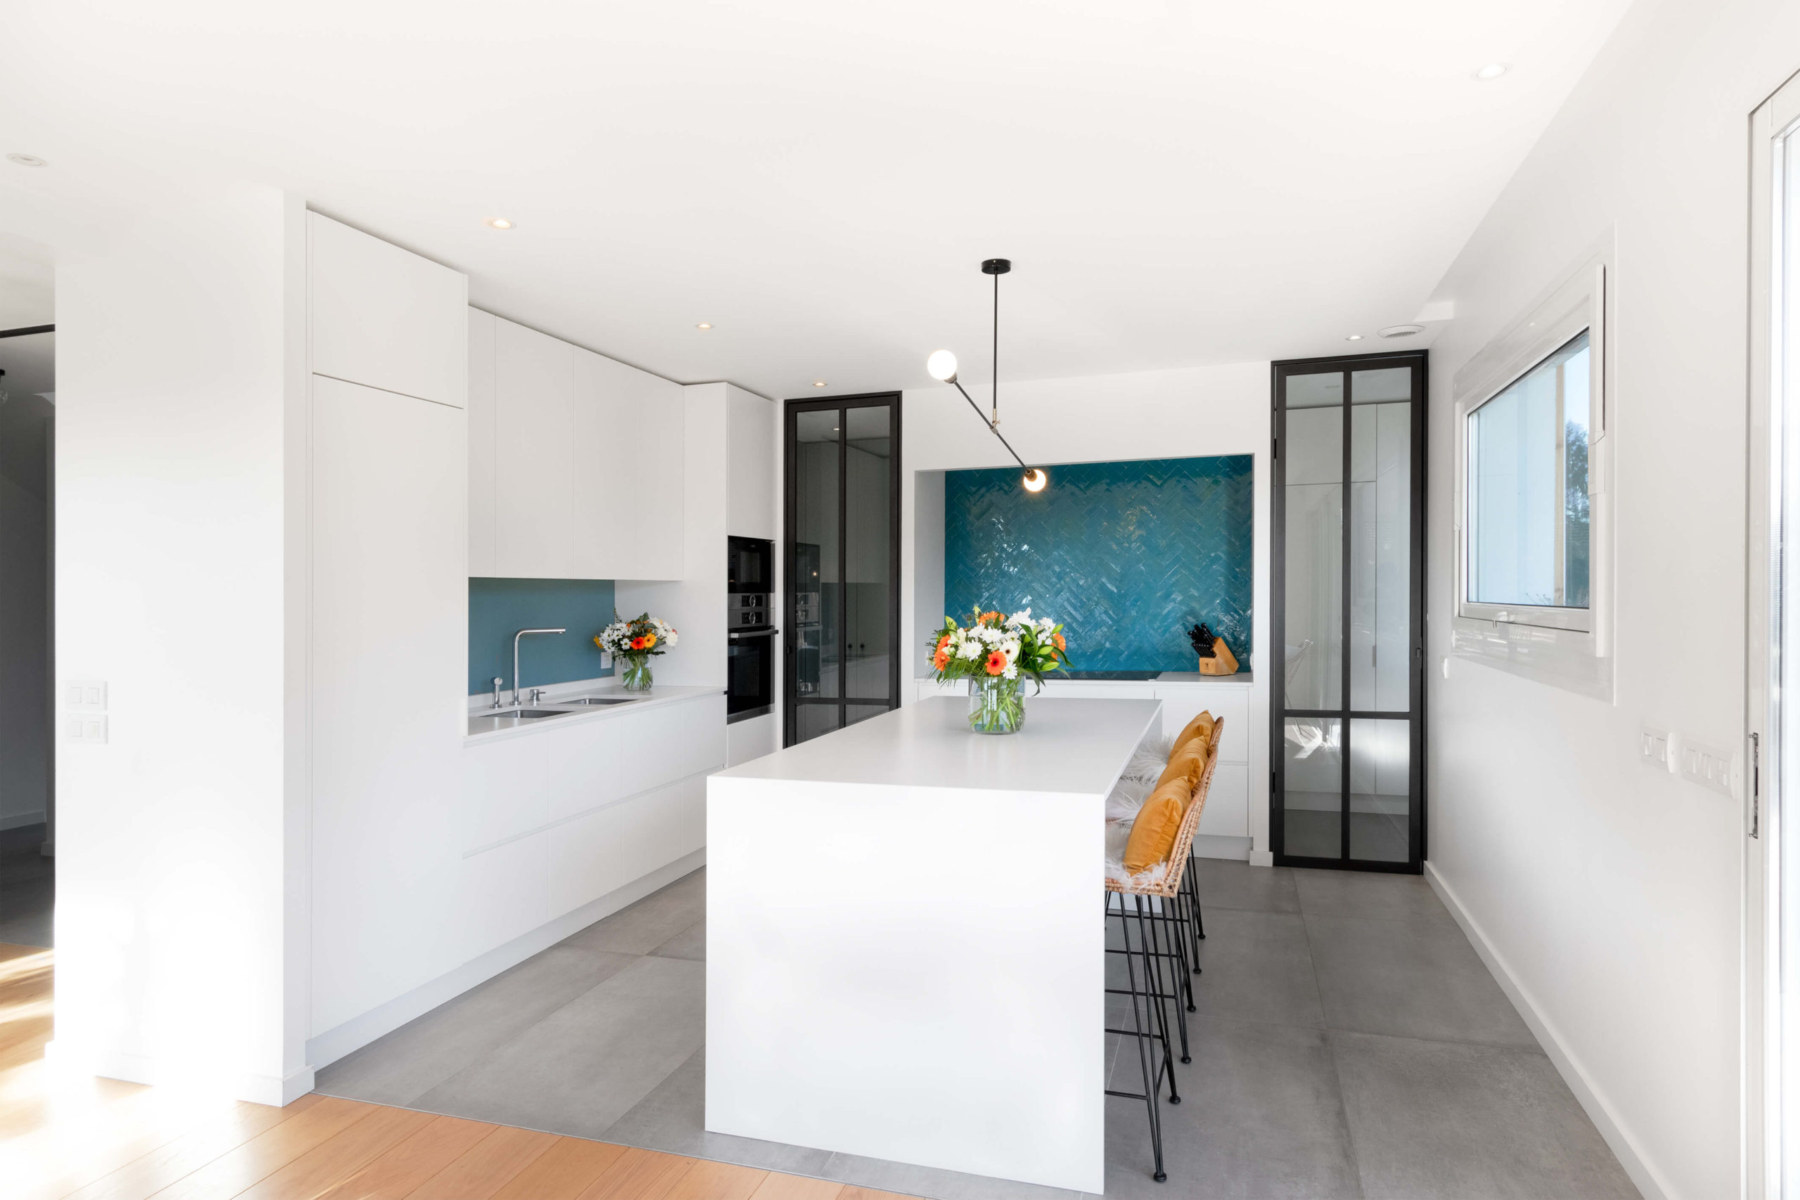 Photographie d'architecture et immobilière d'une cuisine avec une ambiance moderne et lumineuse